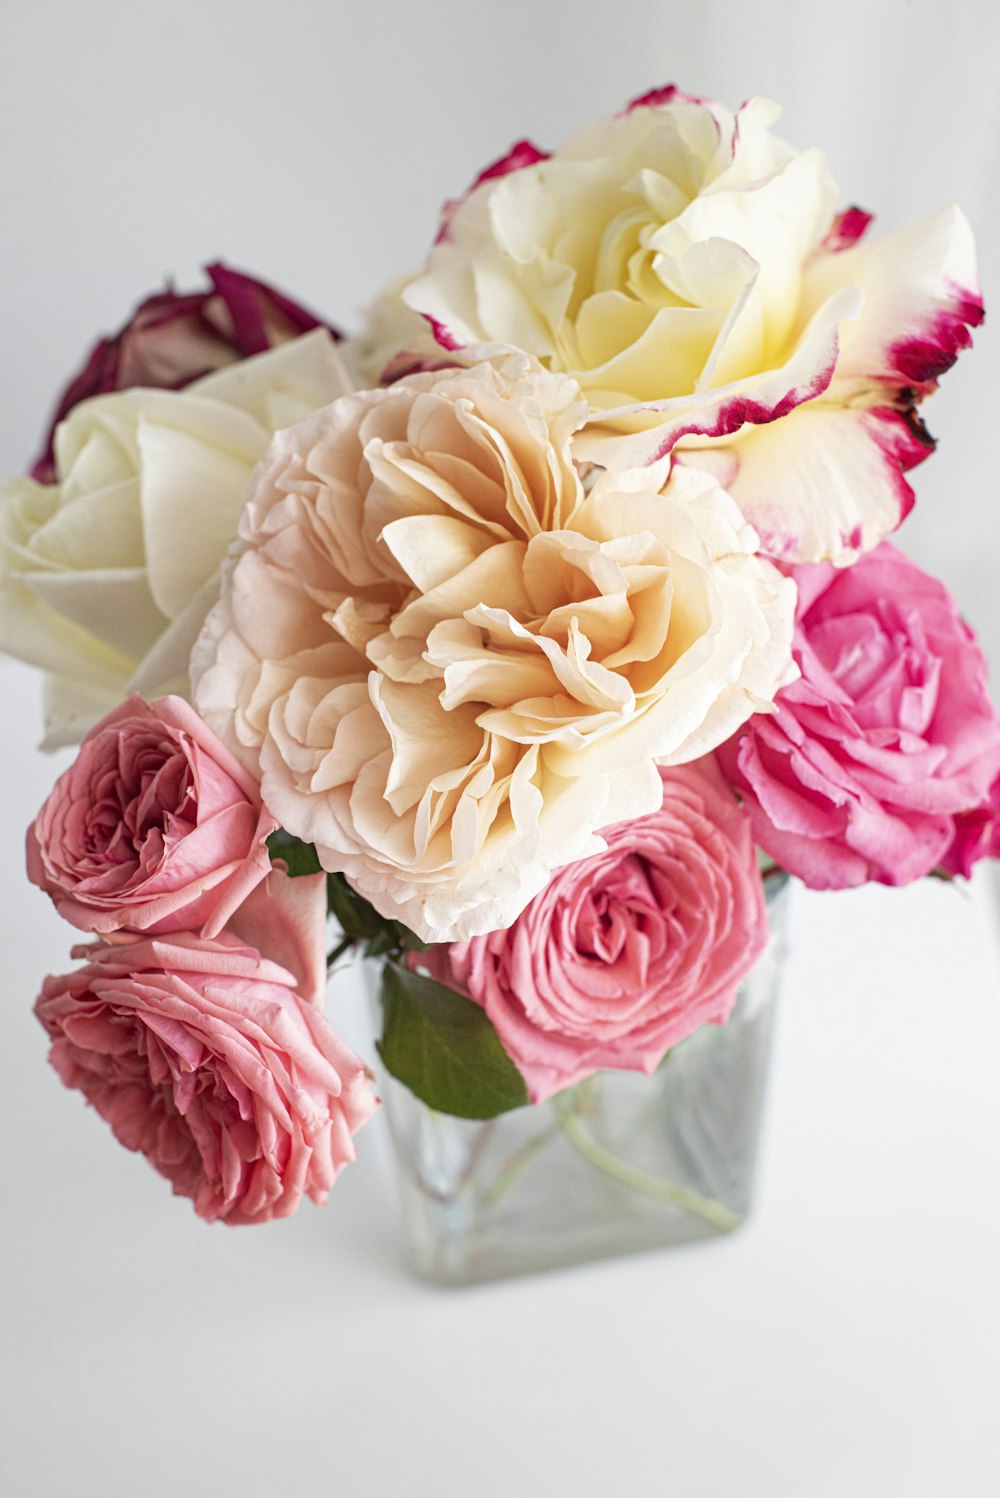 rosas rosa e branco no vaso branco